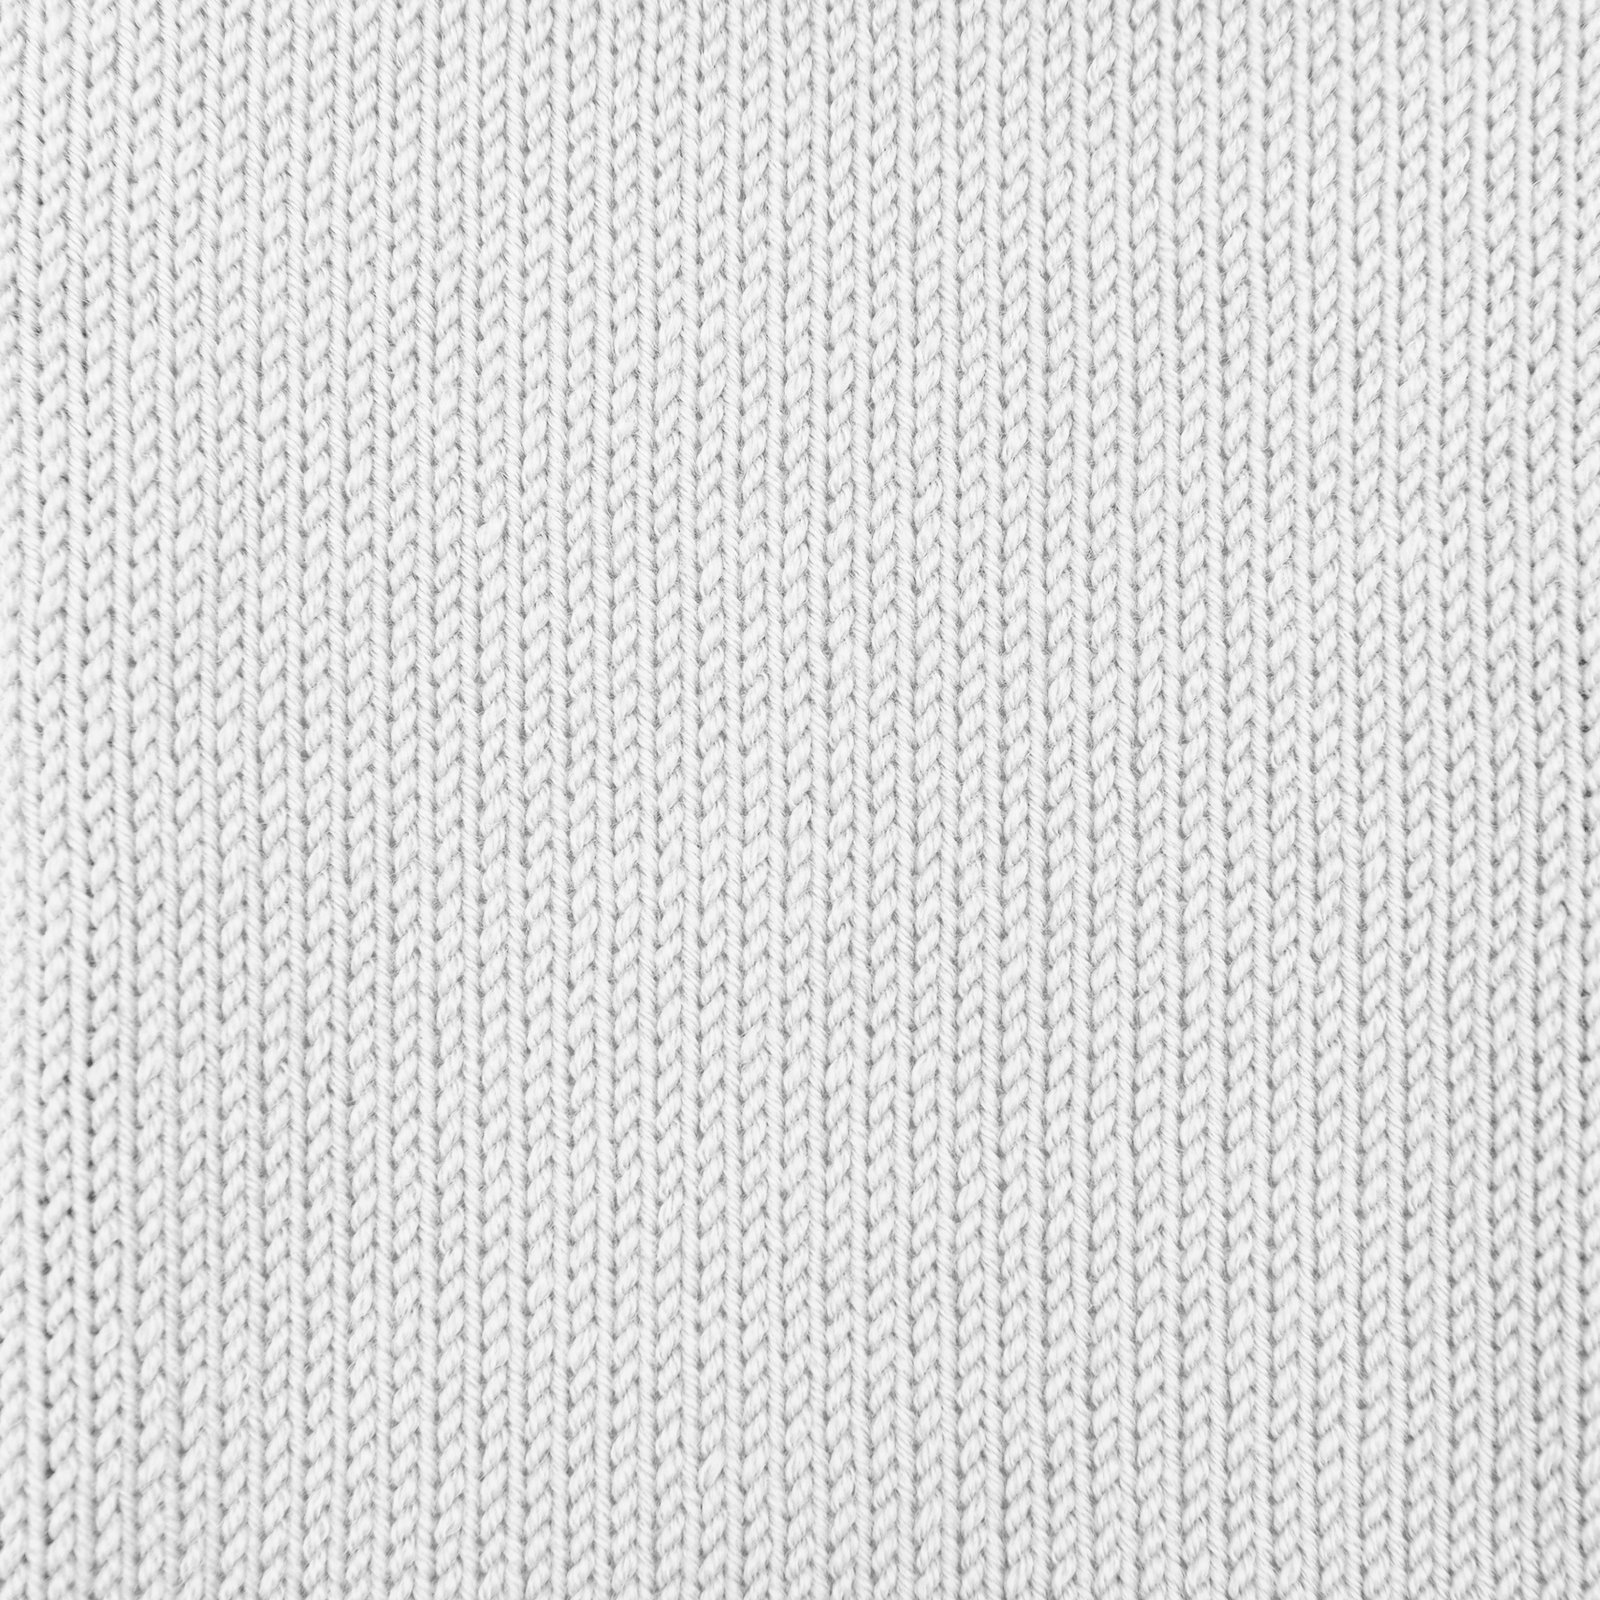 FRAYA, 100% merino yarn "Delicate", white 90000501_sskit